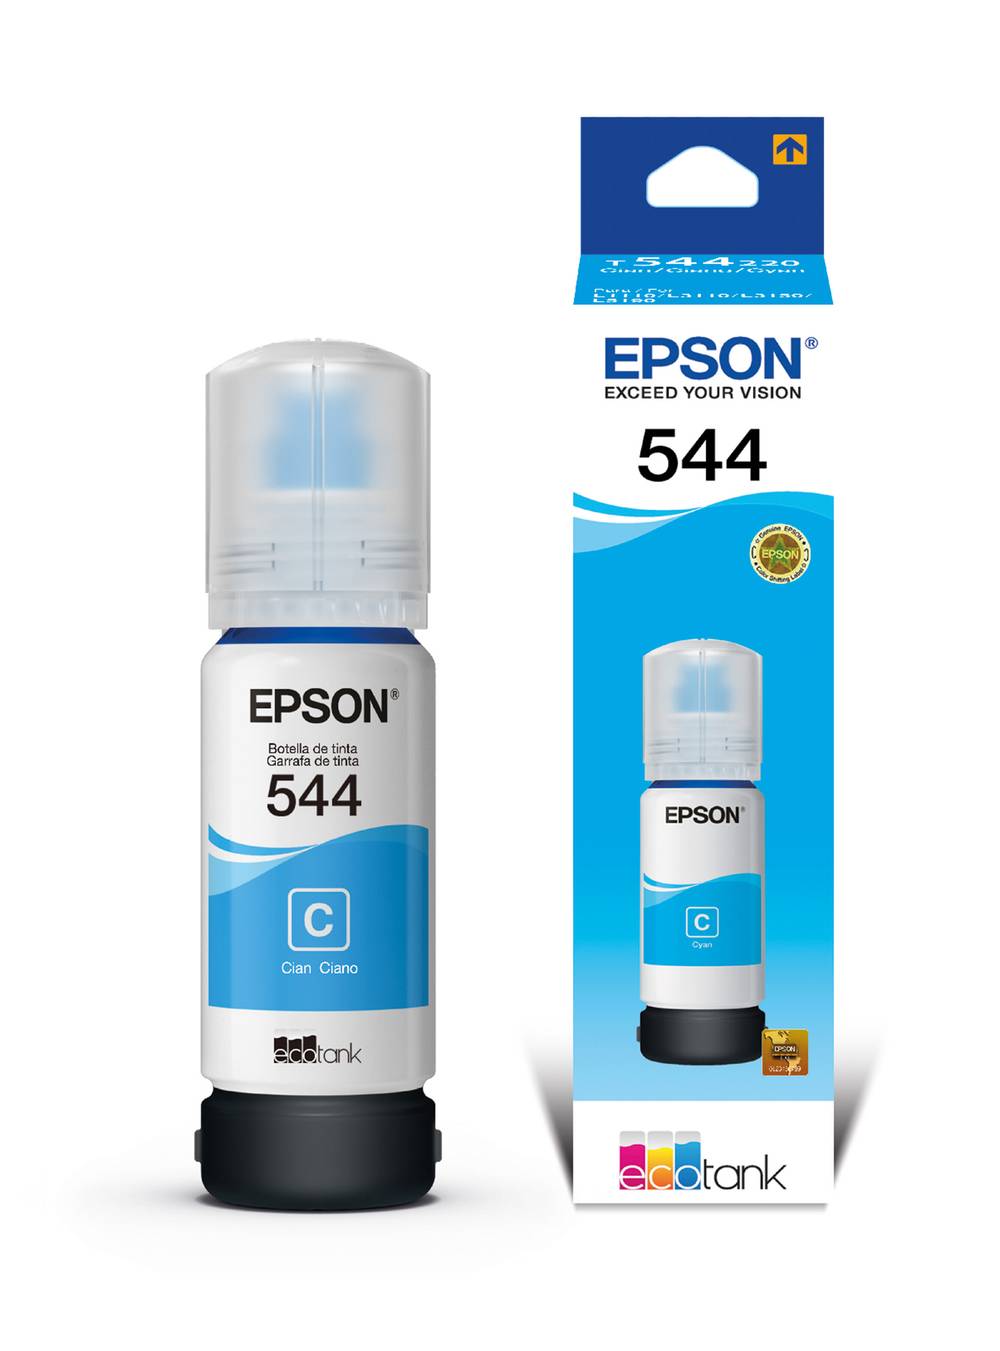 Epson botella tinta t504220 cyan (70 ml)